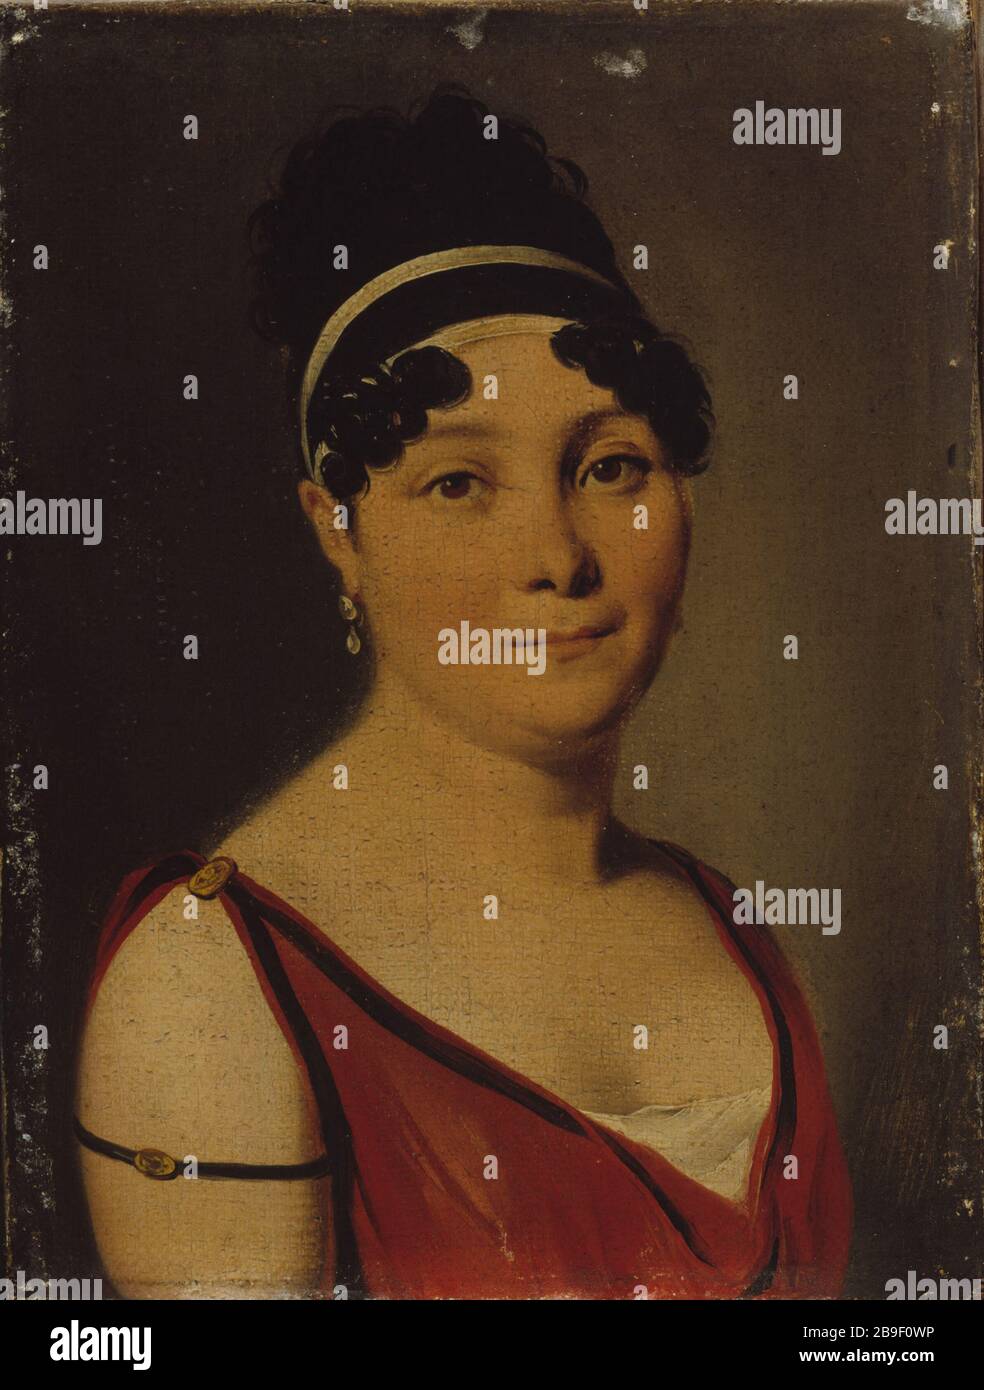 PORTRAIT OF ALLEGED CAROLINE BRANCHU, SINGER Louis-Léopold Boilly (1761-1845). 'Portrait présumé de Caroline Branchu (1780-1850), chanteuse'. Huile sur toile. Paris, musée Carnavalet. Stock Photo